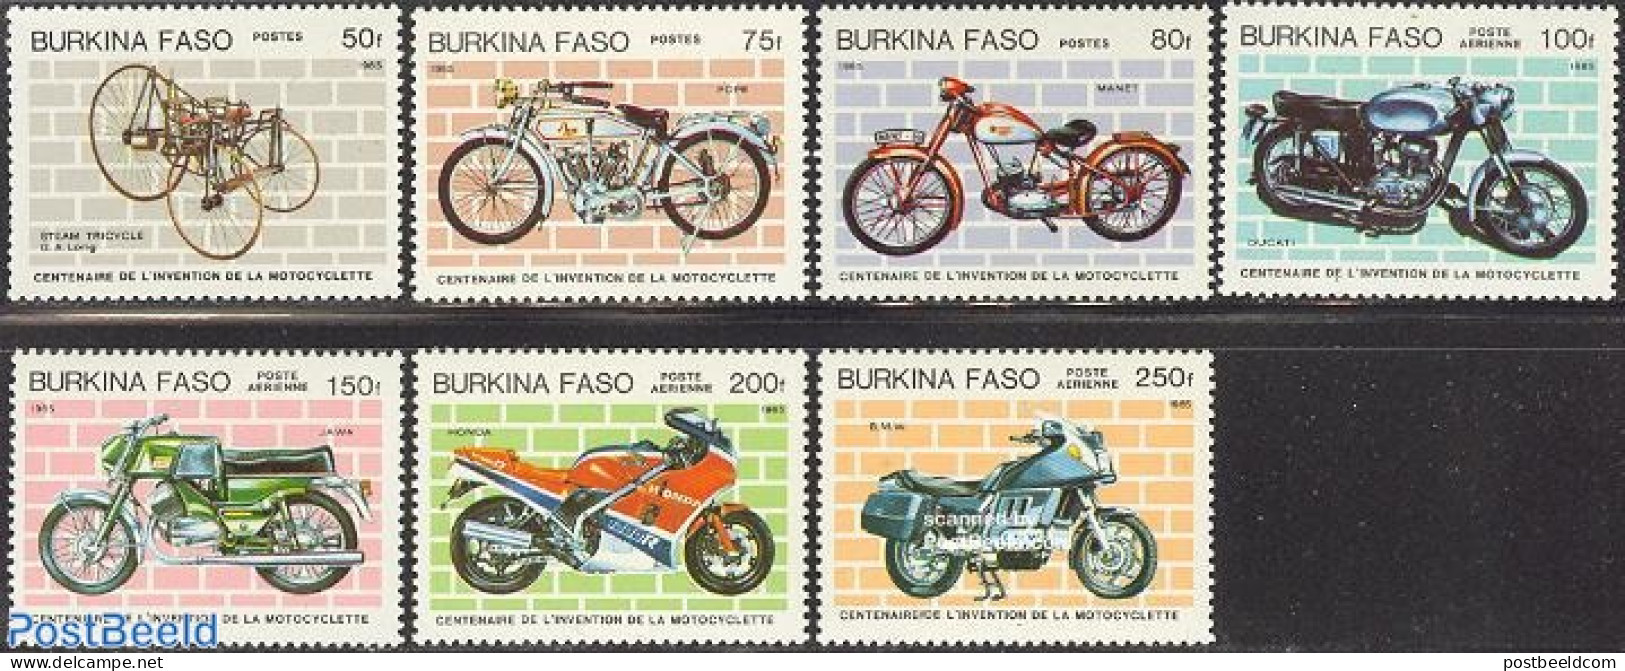 Burkina Faso 1985 Motorcycle Centenary 7v, Mint NH, Transport - Motorcycles - Motorräder